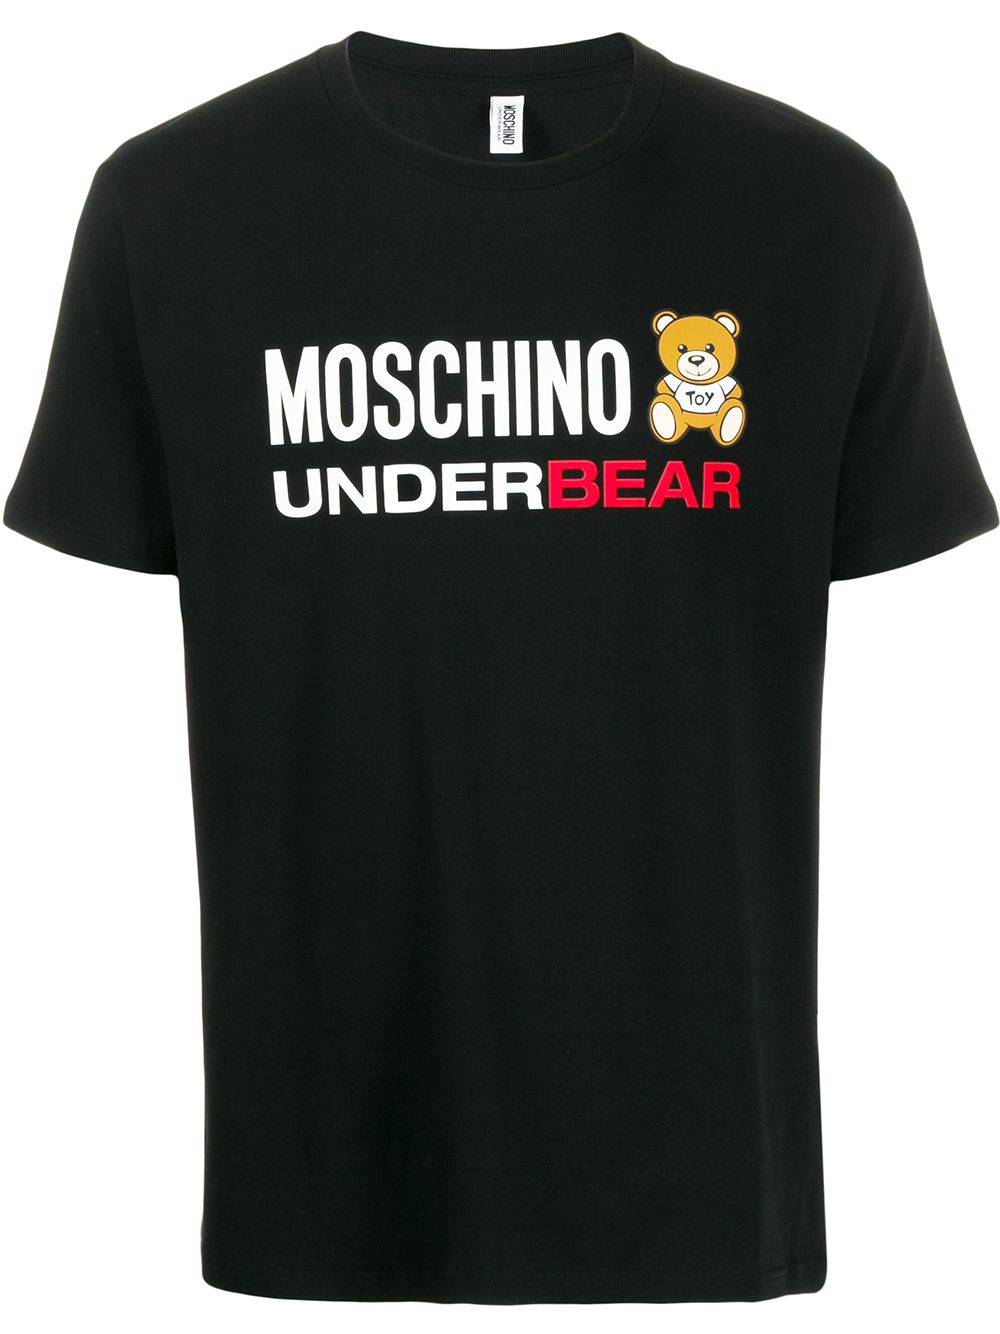 фото Moschino футболка Underbear с логотипом